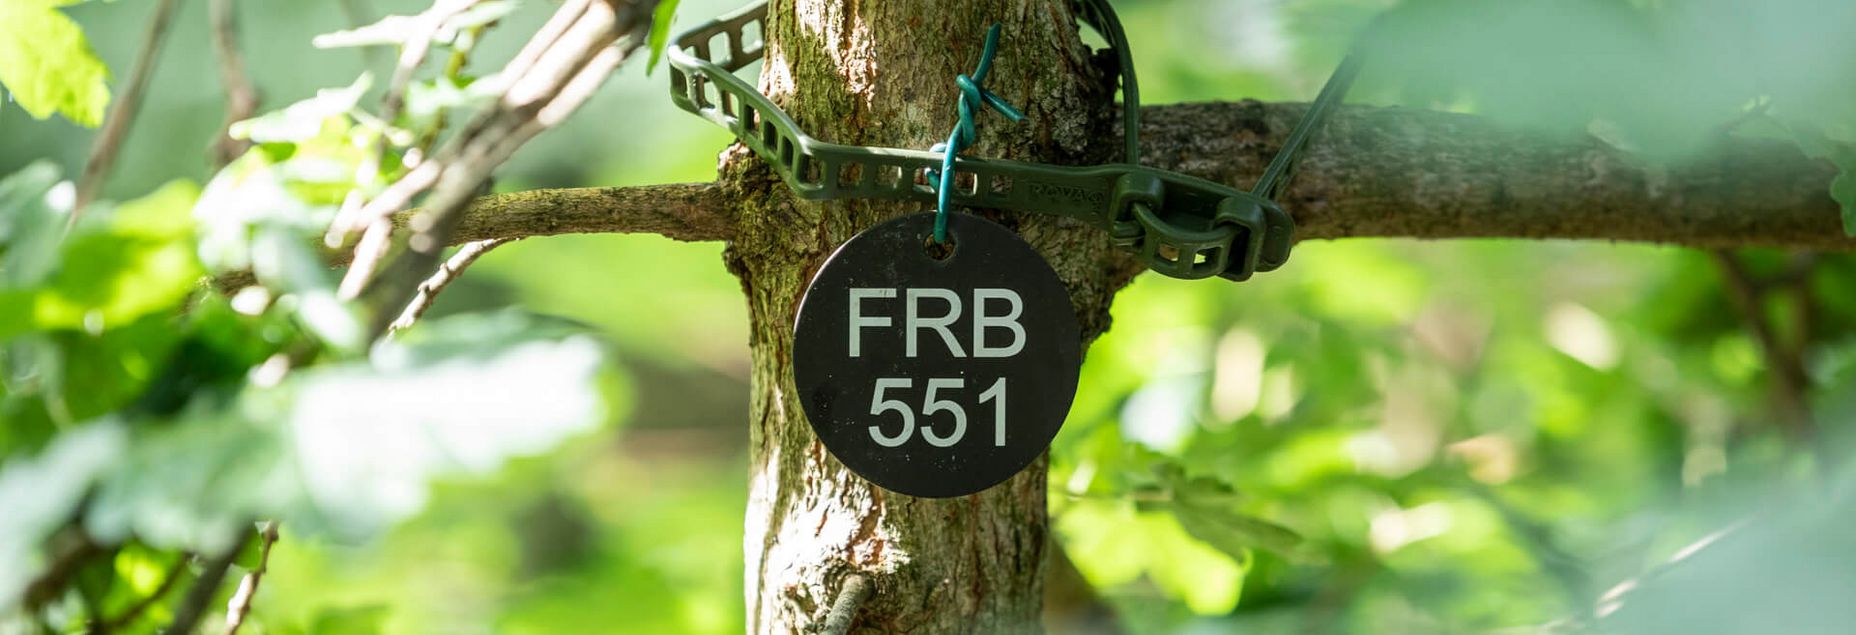 FRB 551 - Plakette